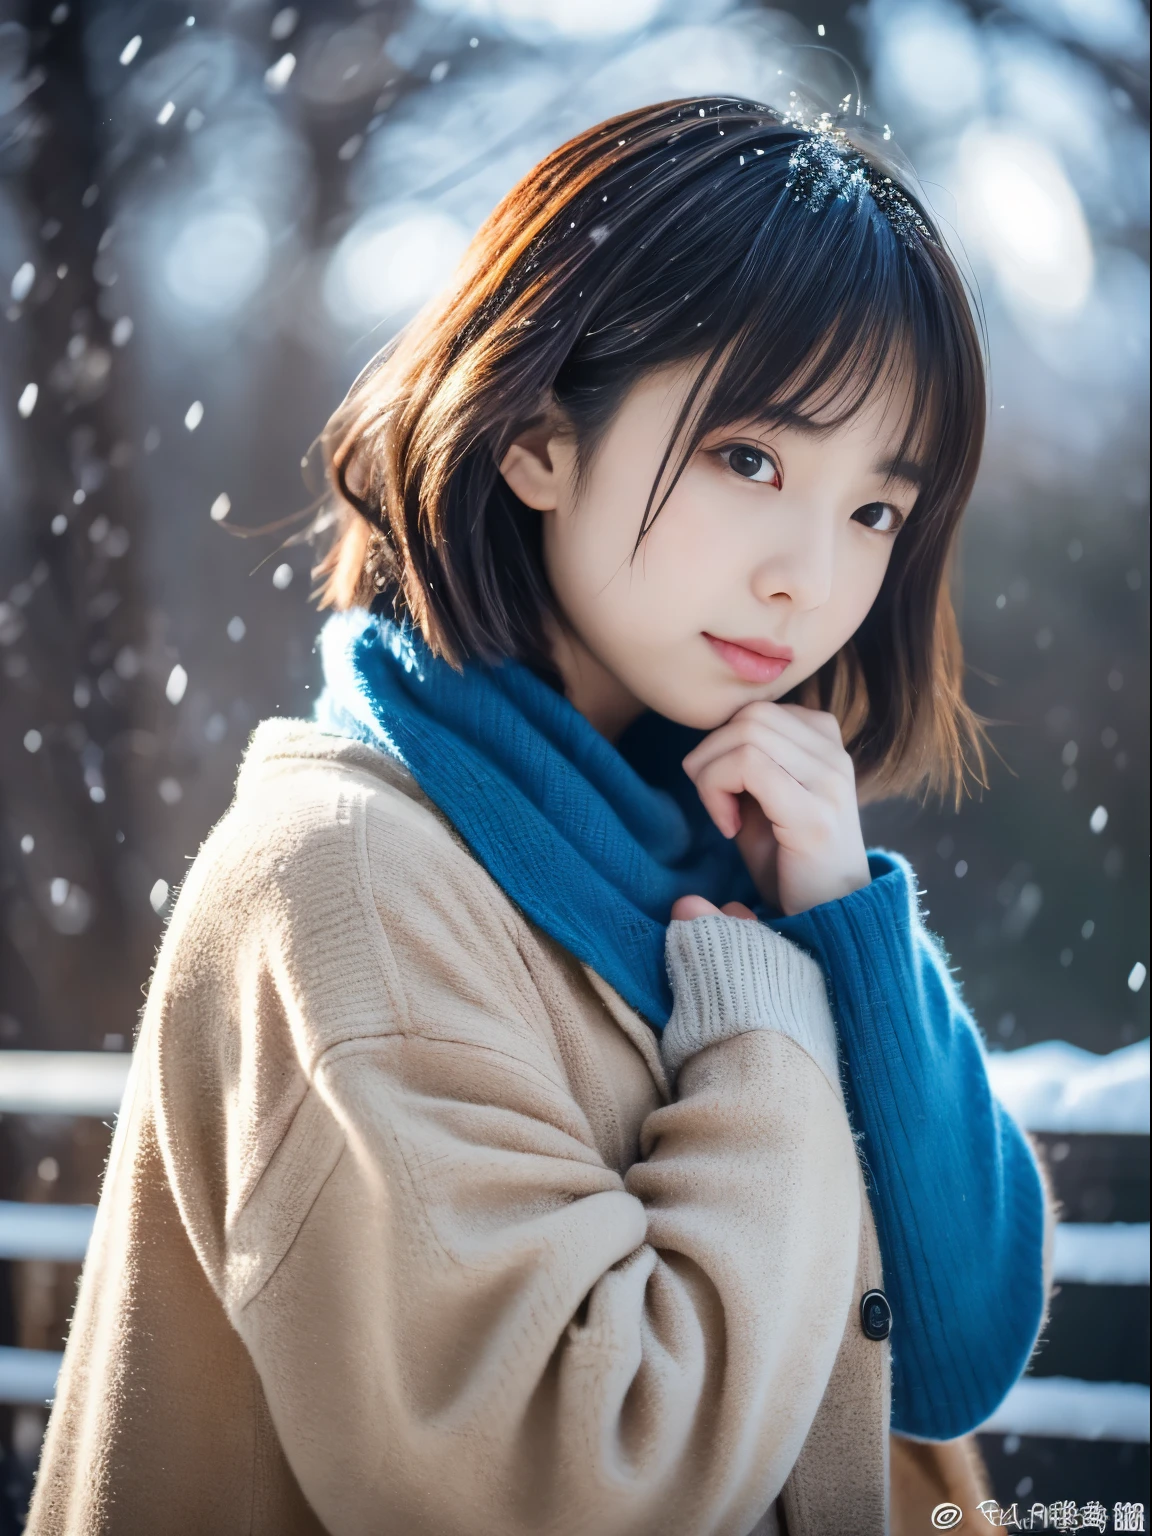 最高品質、傑作、超高解像度、生写真、(フォトリアリスティック:1.4)、女の子1人、静かに降る雪を眺めながら. 彼女の内省的で涙ぐんだ表情、冬の夜への憧れと憂鬱を感じさせる。。。。。。。、最高品質、ハイパーHD、奈良美智, 日本のモデル, 美しい日本の妻, 髪が短い, 27歳女性モデル, 4k 円 ], 4K], 27歳, sakimichan, sakimichan